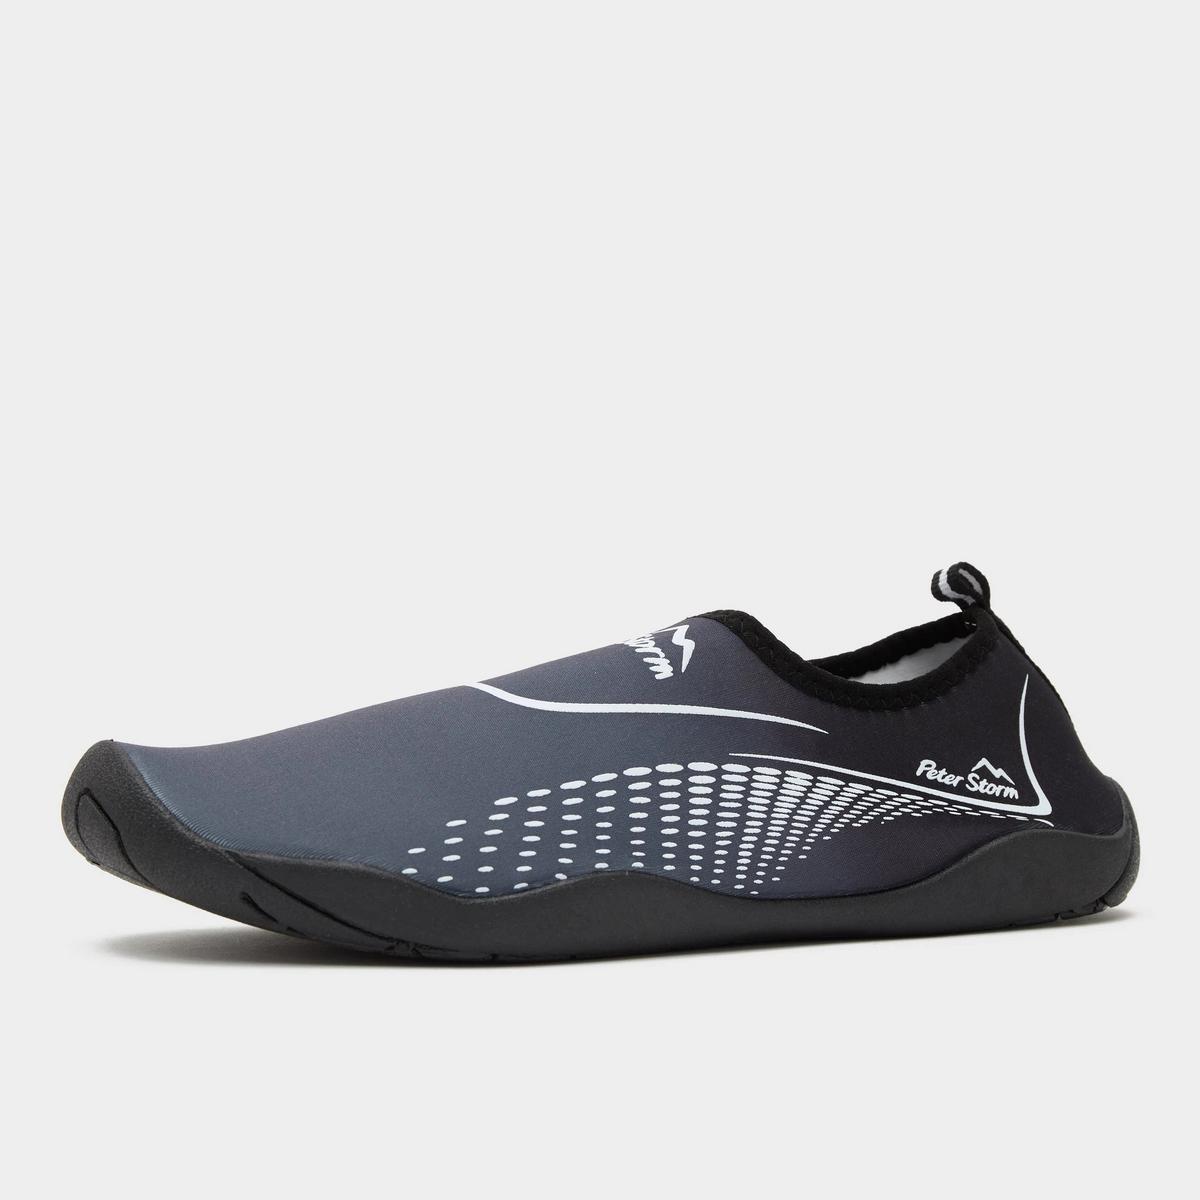 Peter Storm Men?s Newquay Aqua Water Shoes - Black